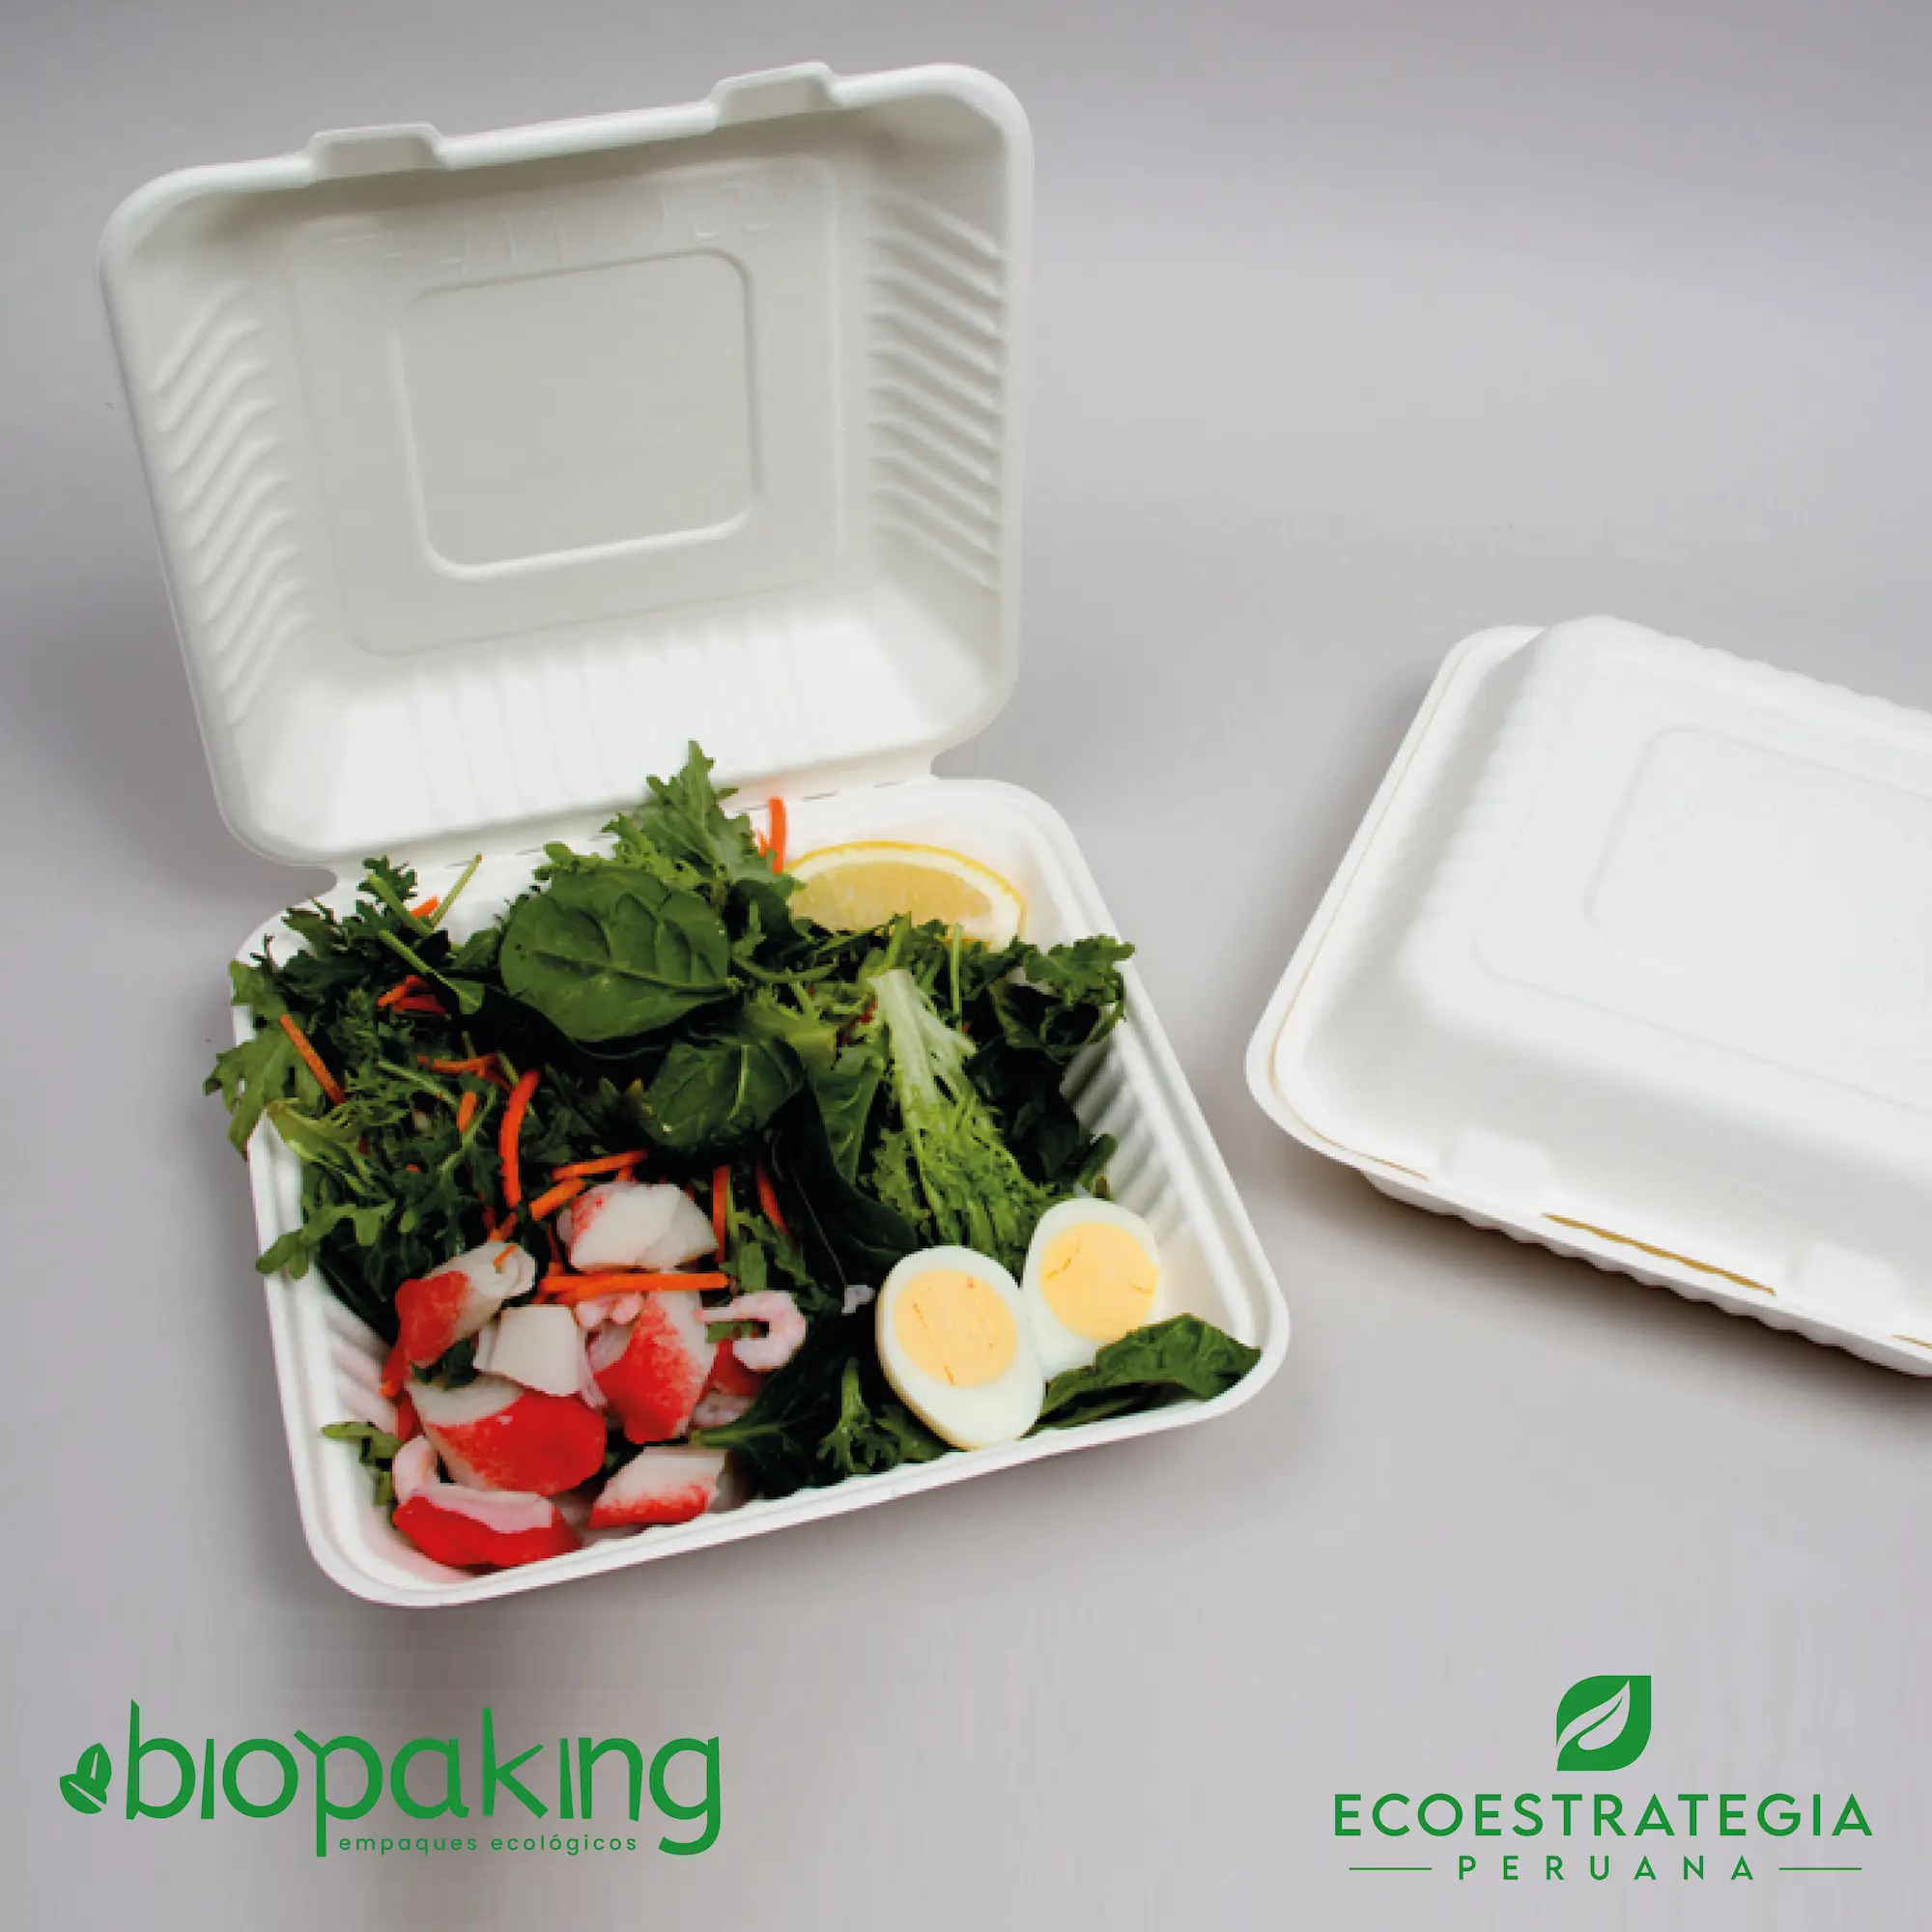 Este envase biodegradable CT1 tiene una capacidad de 1500ml. Taper biodegradable a base del bagazo de fibra de caña de azúcar, empaques de gramaje ideal para comidas frías y calientes